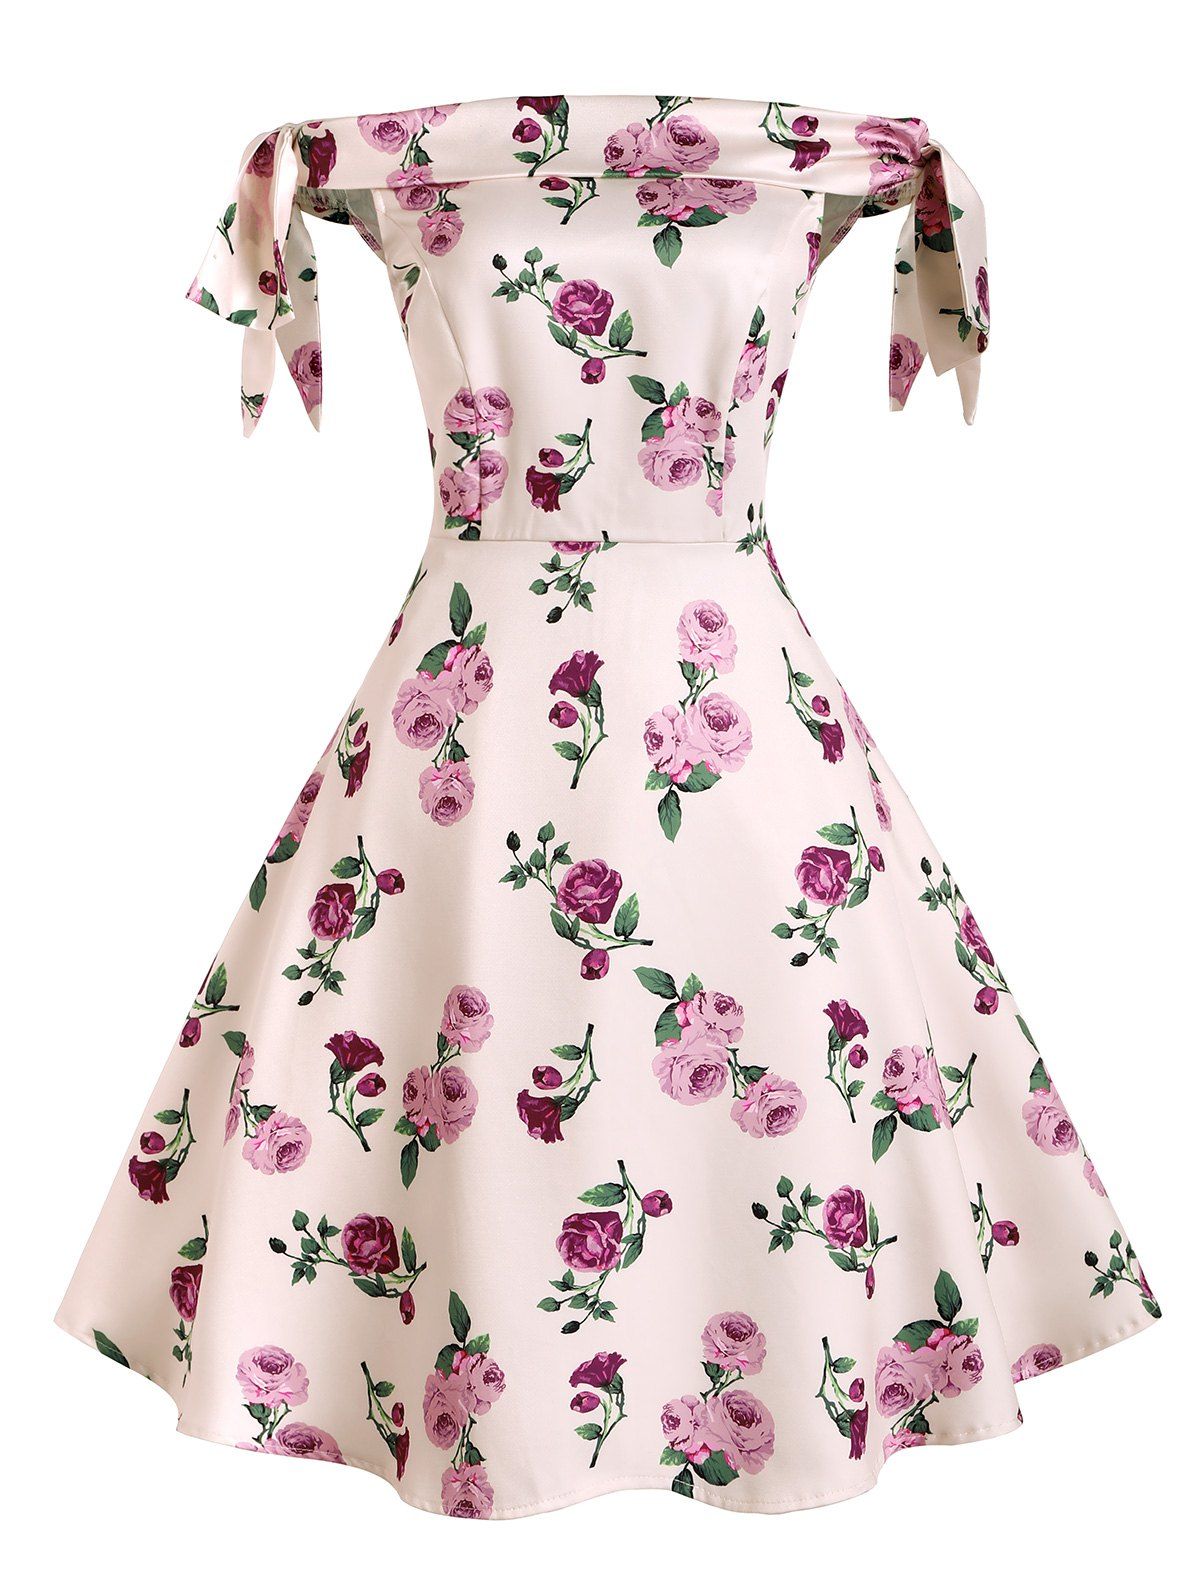 Bowknot Polka Dot Floral Off Shoulder Dress - LIGHT PINK M